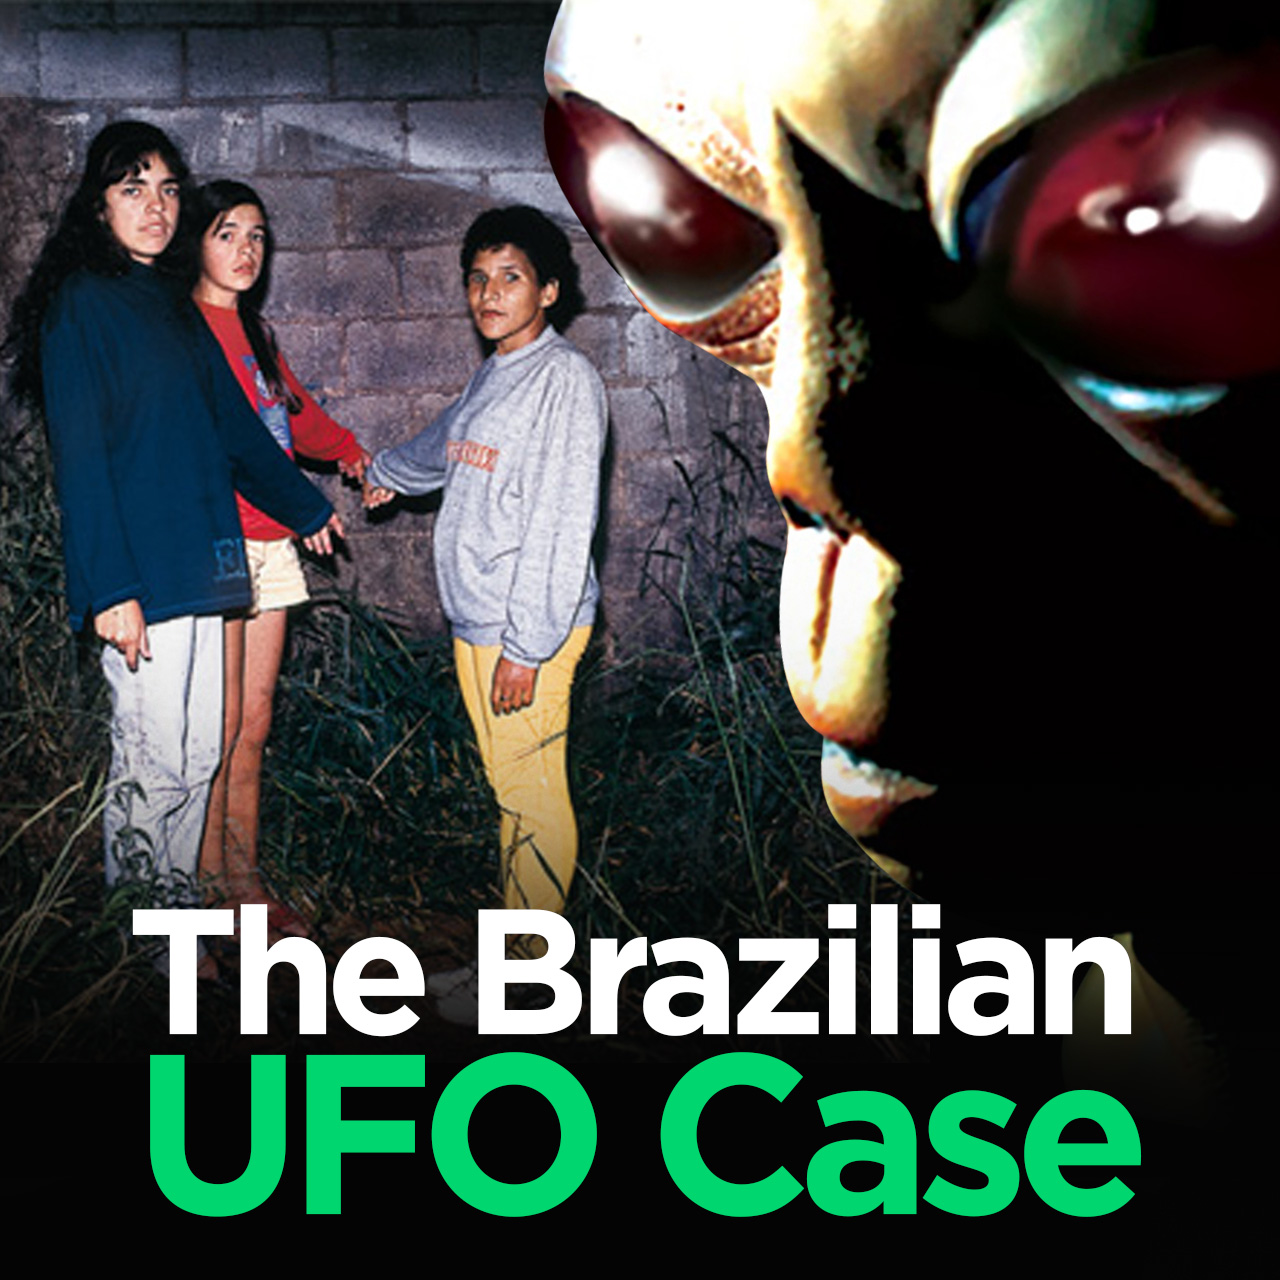 The Strange Case of a UFO in Brazil (Varginha-BR)